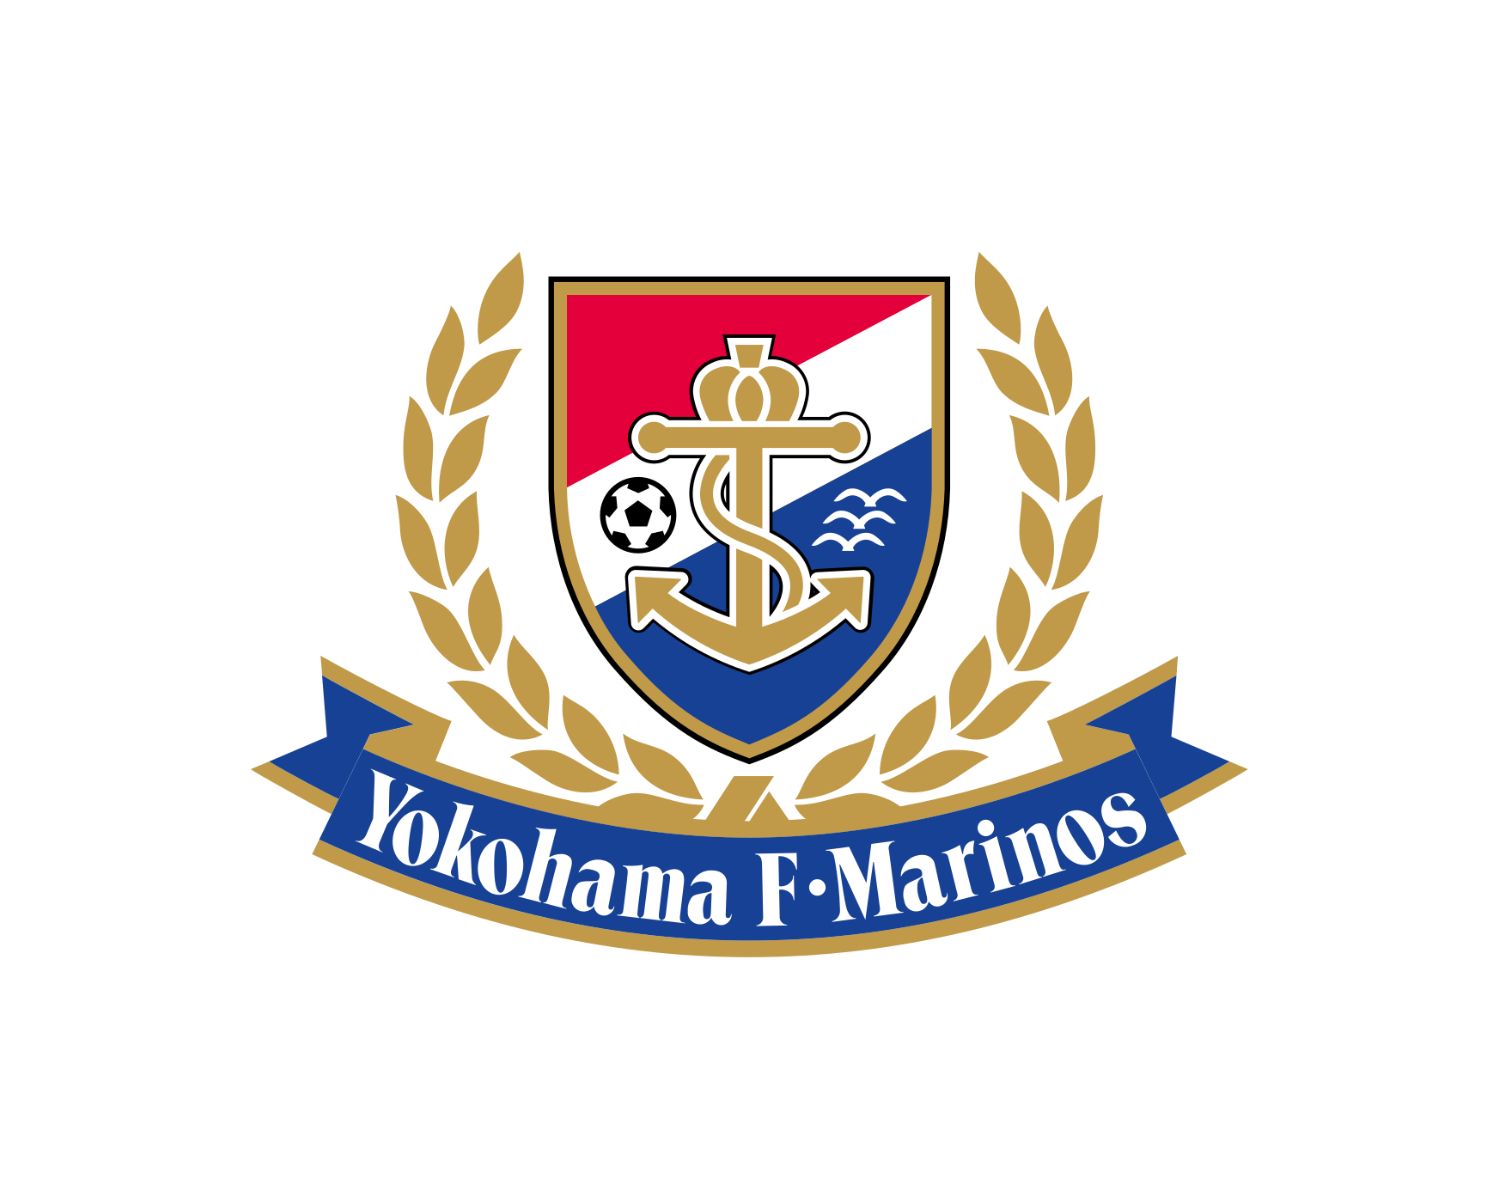 yokohama-f-marinos-20-football-club-facts